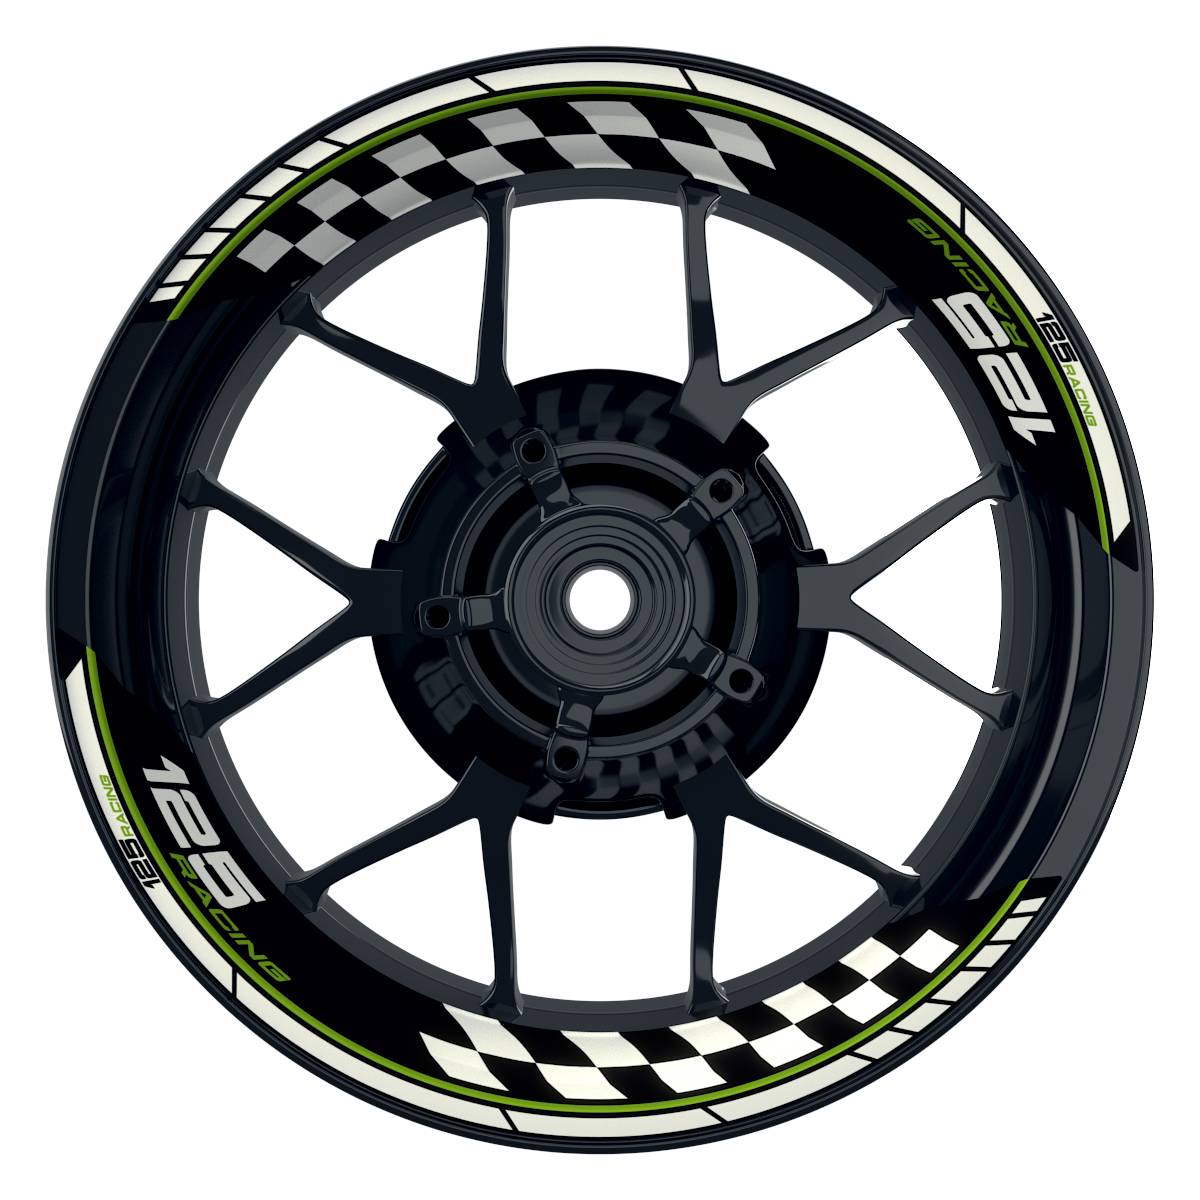 KTM Racing 125 Grid schwarz gruen Frontansicht